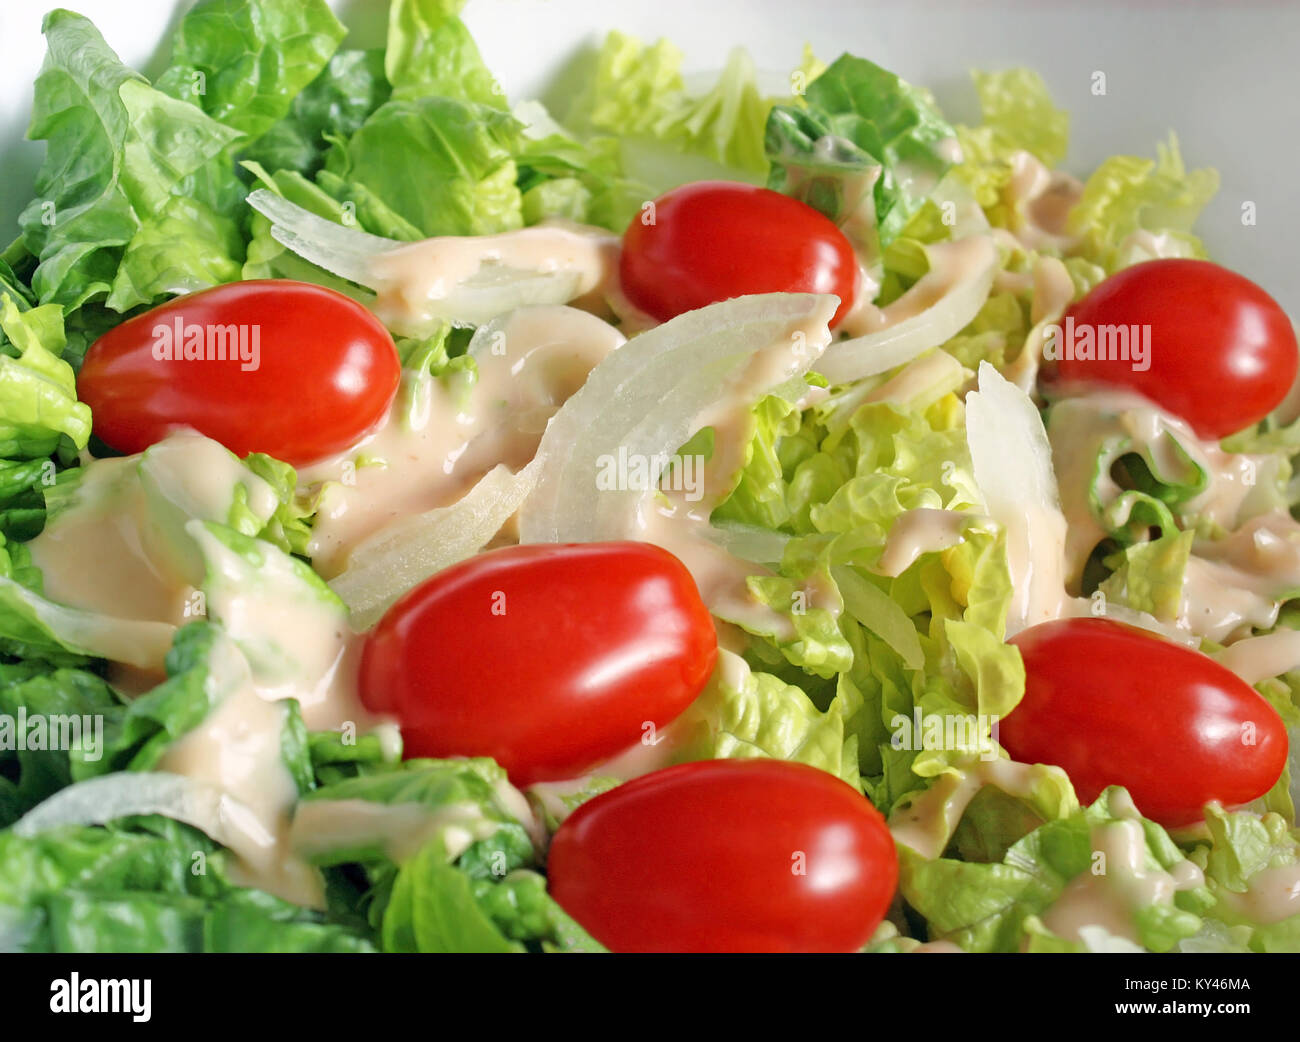 Frischen Gartensalat mit reifen Tomaten, in Scheiben geschnittene Zwiebeln und cremige Dressing Stockfoto